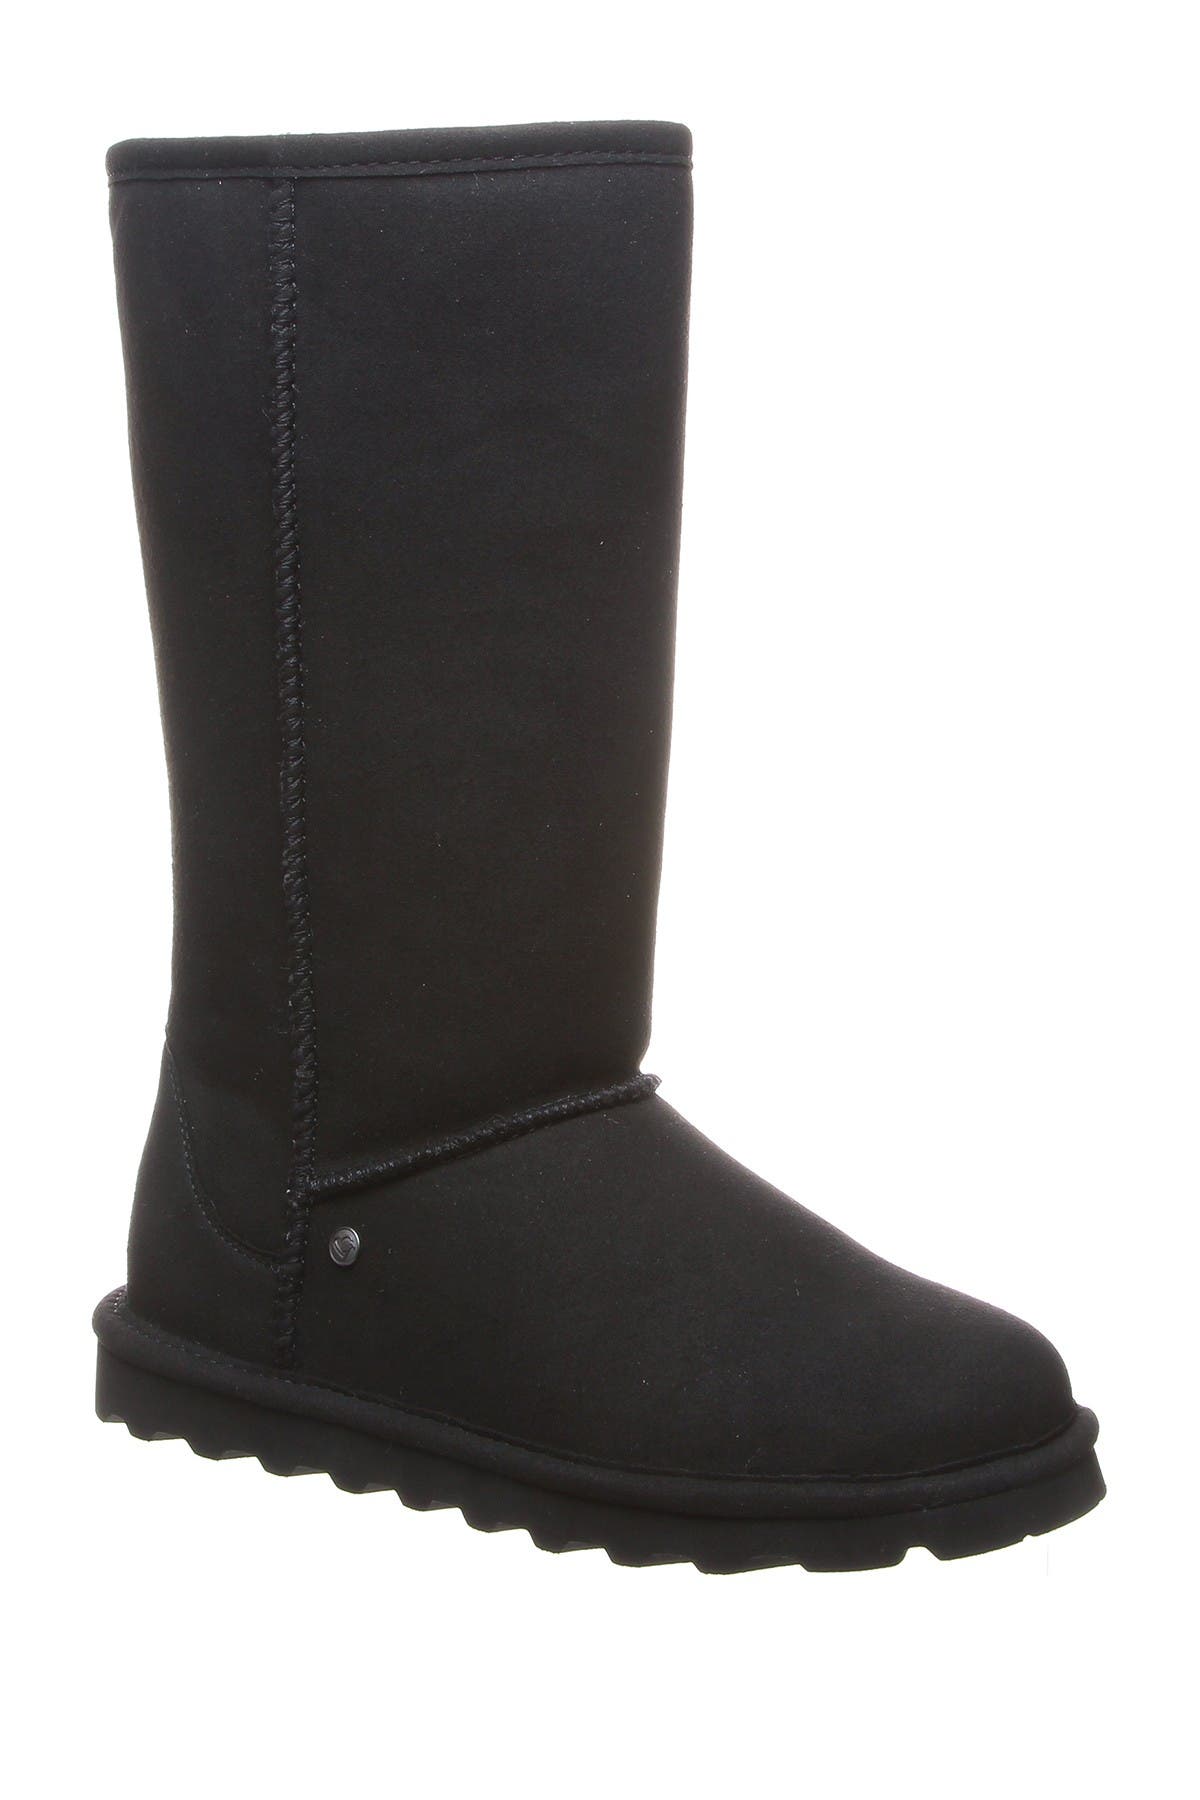 women's sheepskin lined winter boots